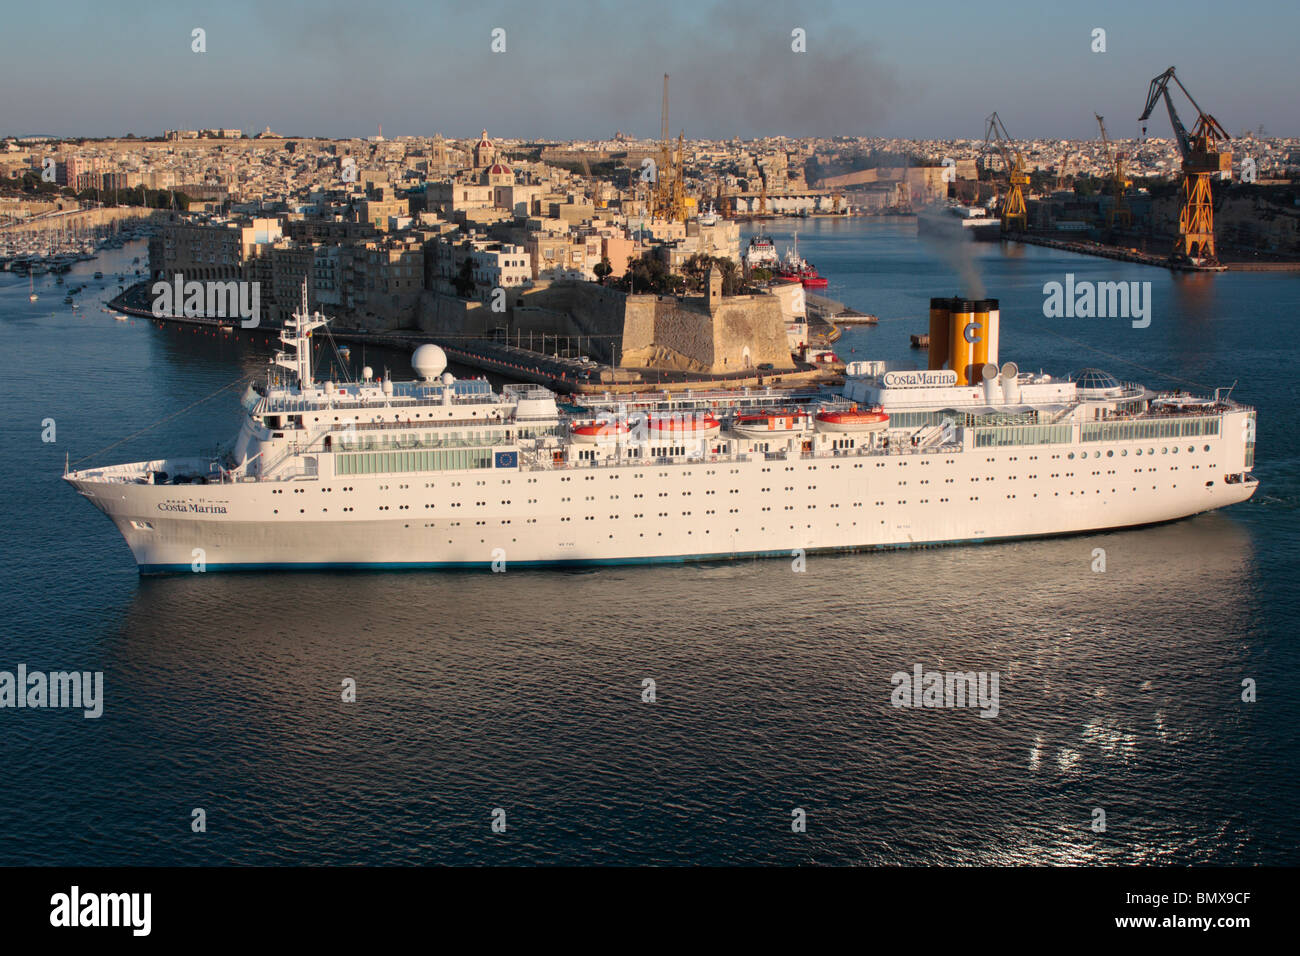 Tourismus, Luftverschmutzung und Umwelt. Das Kreuzfahrtschiff Costa Marina emittiert Rauchabgase bei der Abfahrt von Malta. Hohe Emissionen von Heizöl. Stockfoto